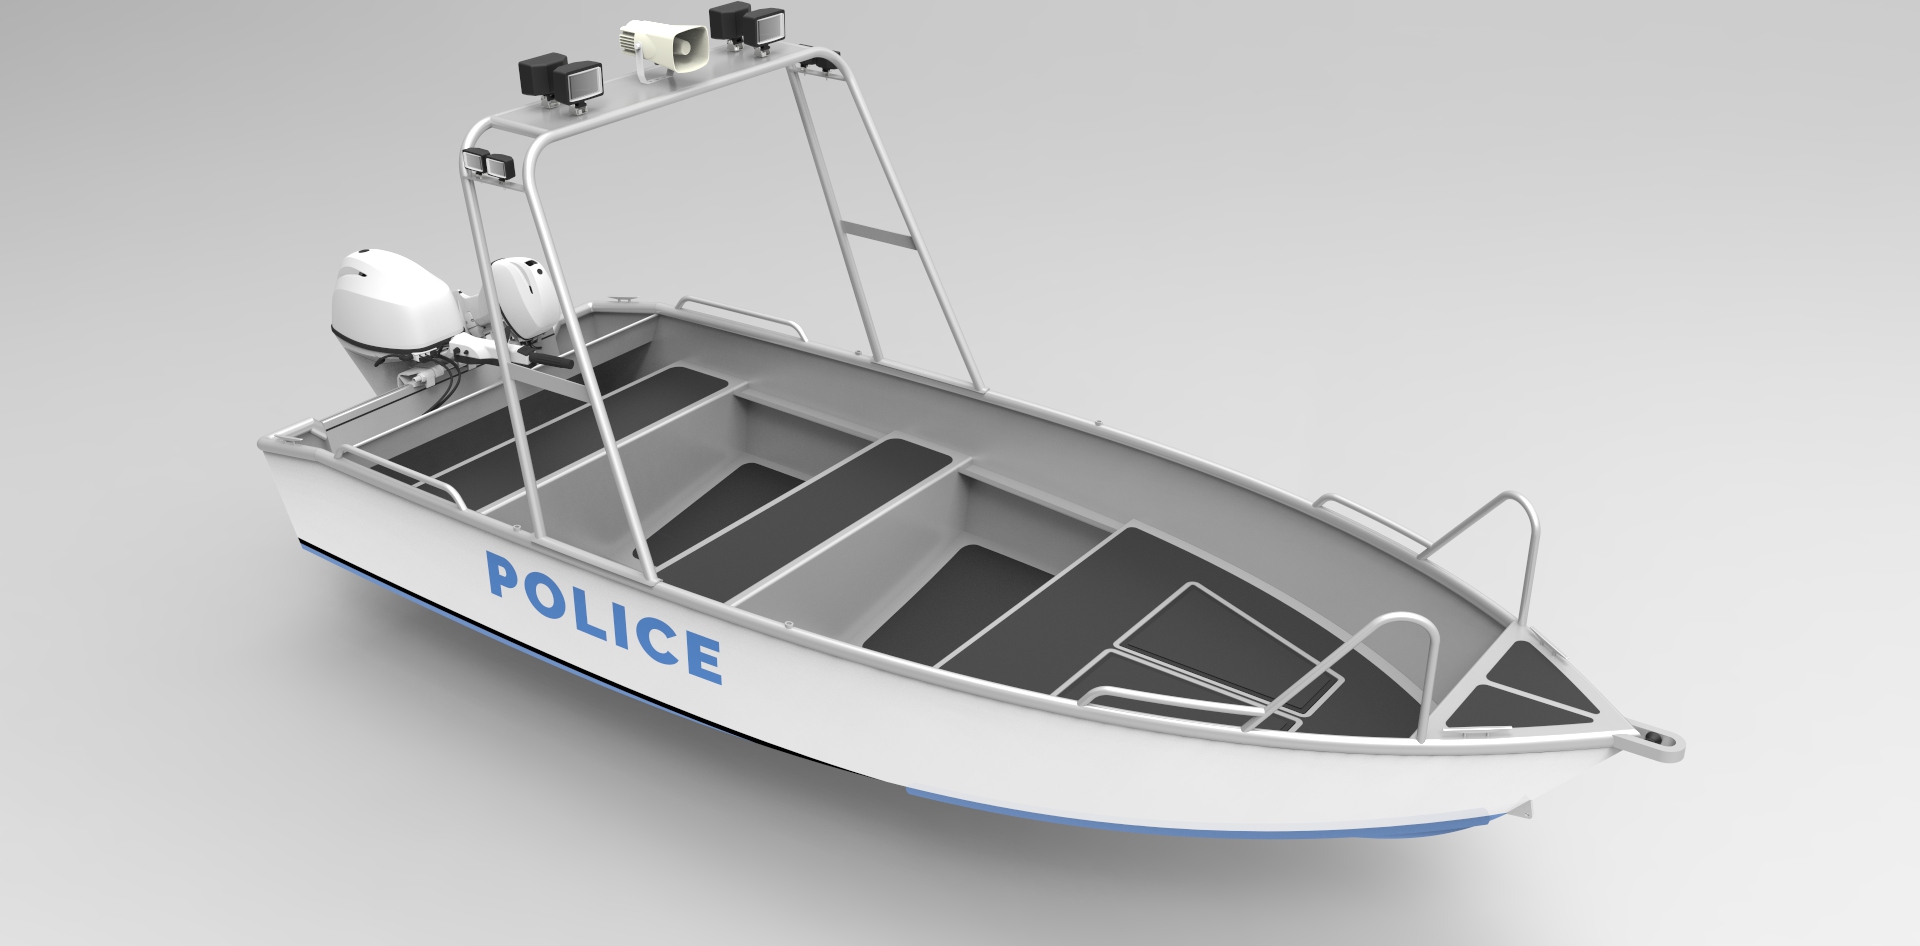 16 Foot (5m) Patrol Skiff - *NEW* - Metal Boat Kits